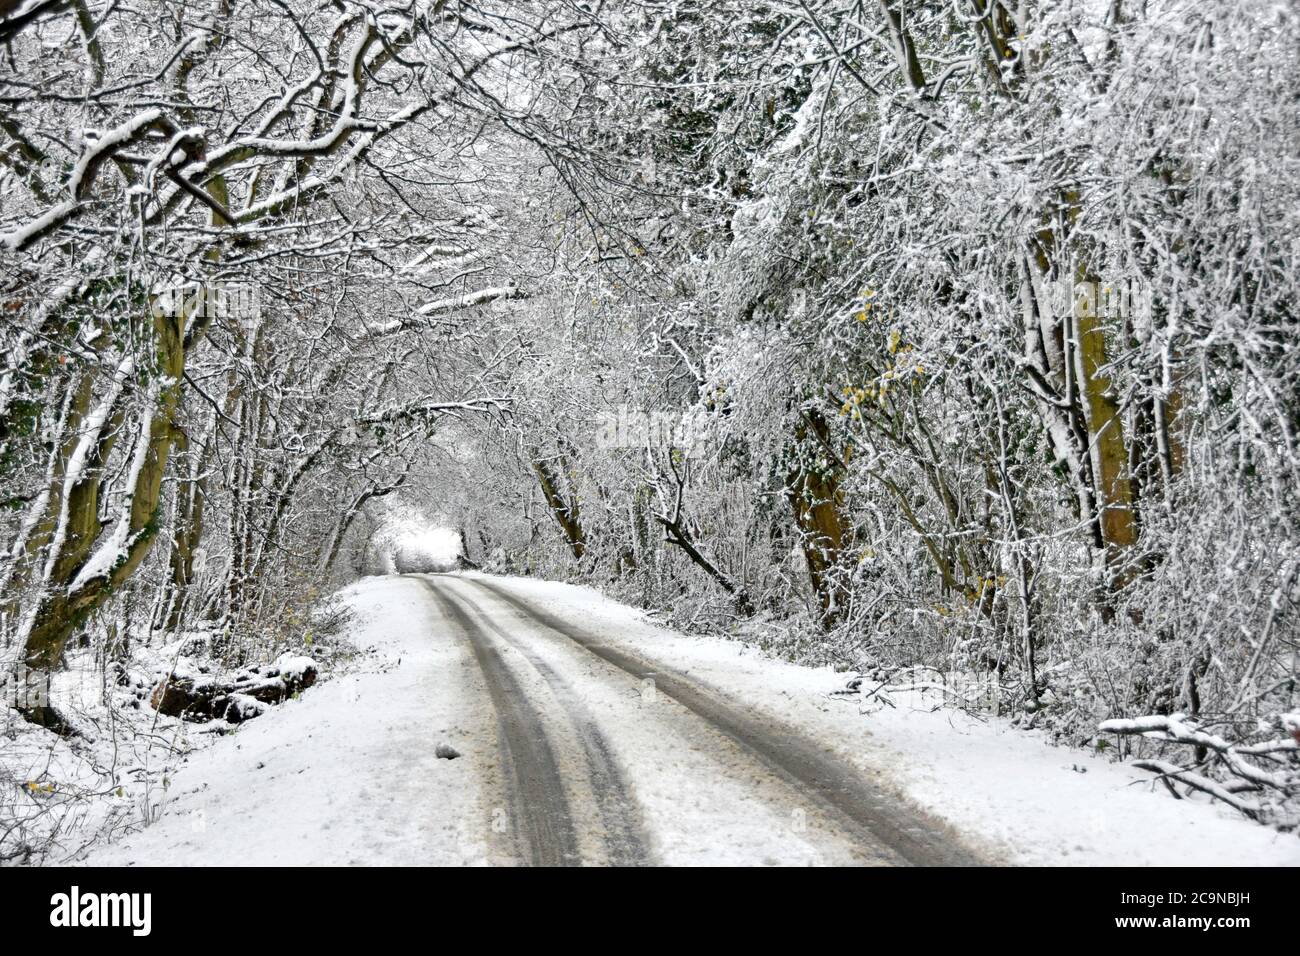 Pistes de voiture dans la scène blanche, voie étroite de la route de campagne après chute de neige sous le tunnel d'arbres couverts de neige dans les merveilles hivernales Paysage Essex Angleterre Royaume-Uni Banque D'Images